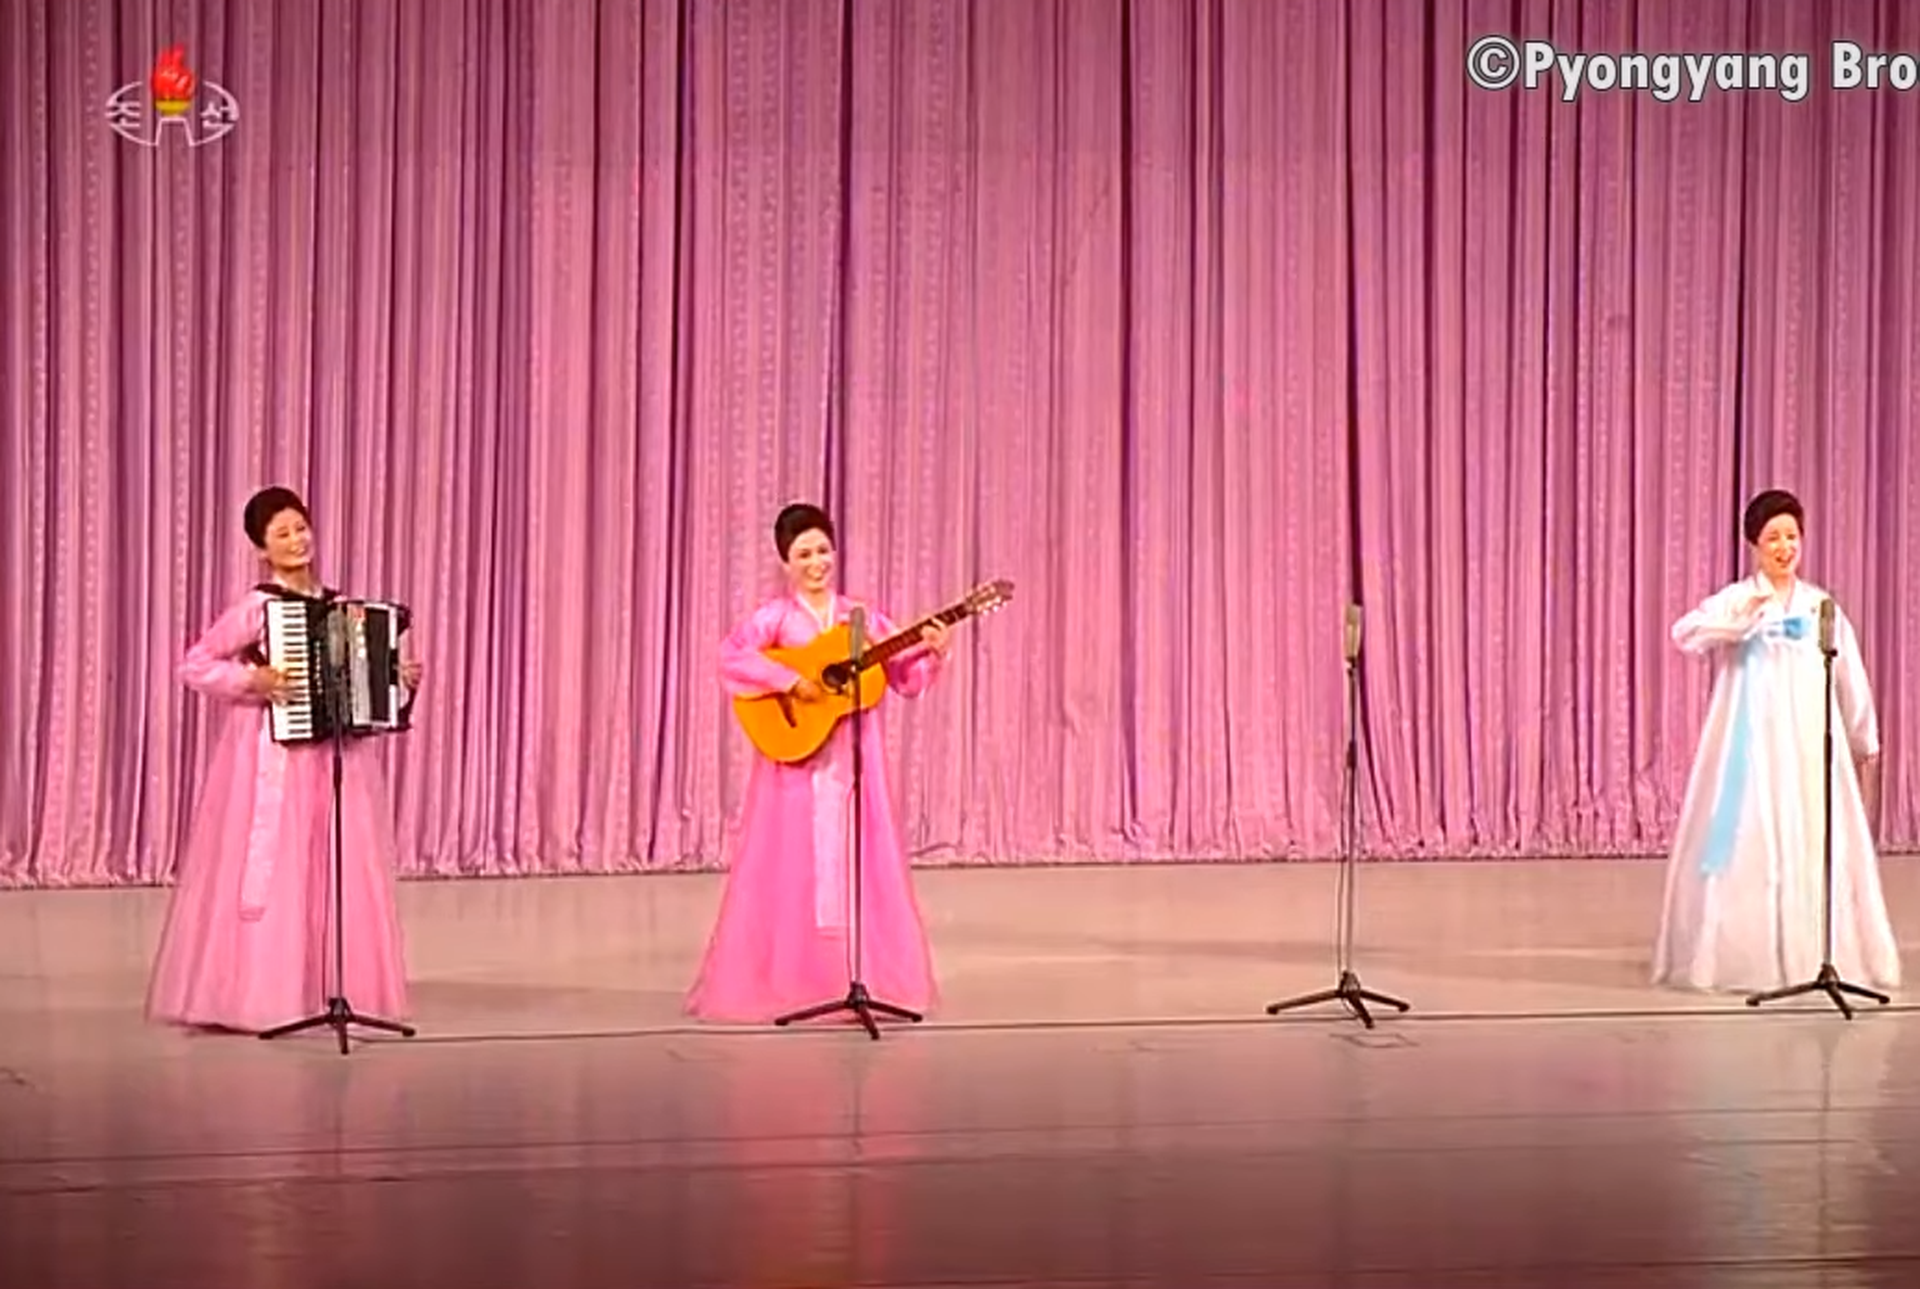 朝鲜人民军军属文艺小组进行诗朗诵弹唱、独唱和重唱等。（朝鲜中央电视台视频截图）